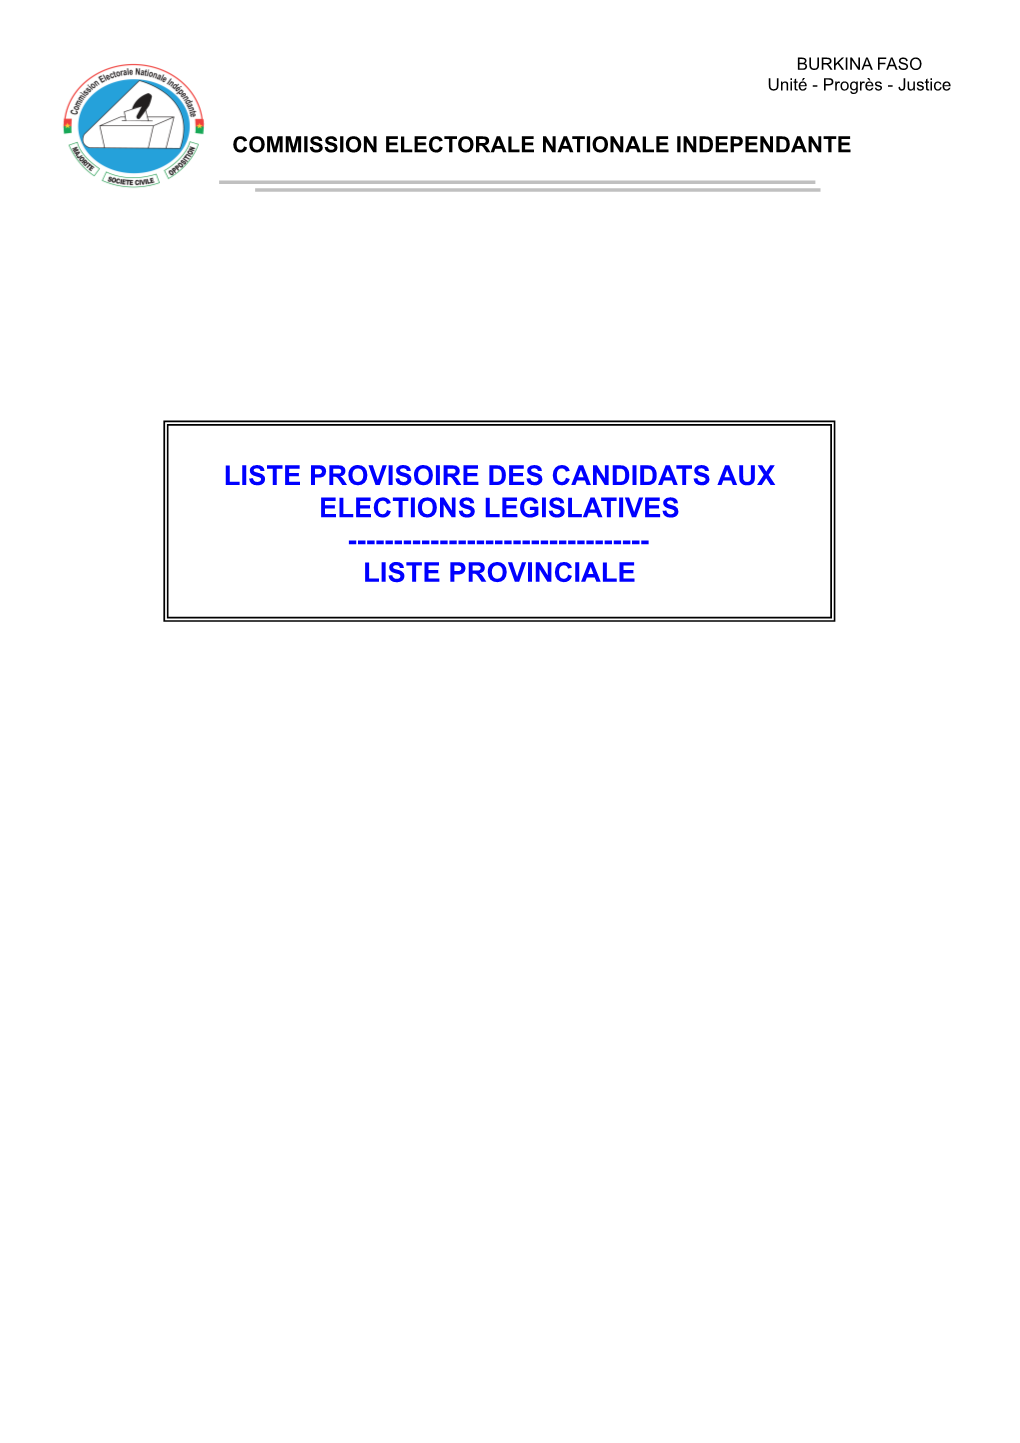 Liste Provisoire Des Candidats Aux Elections Legislatives